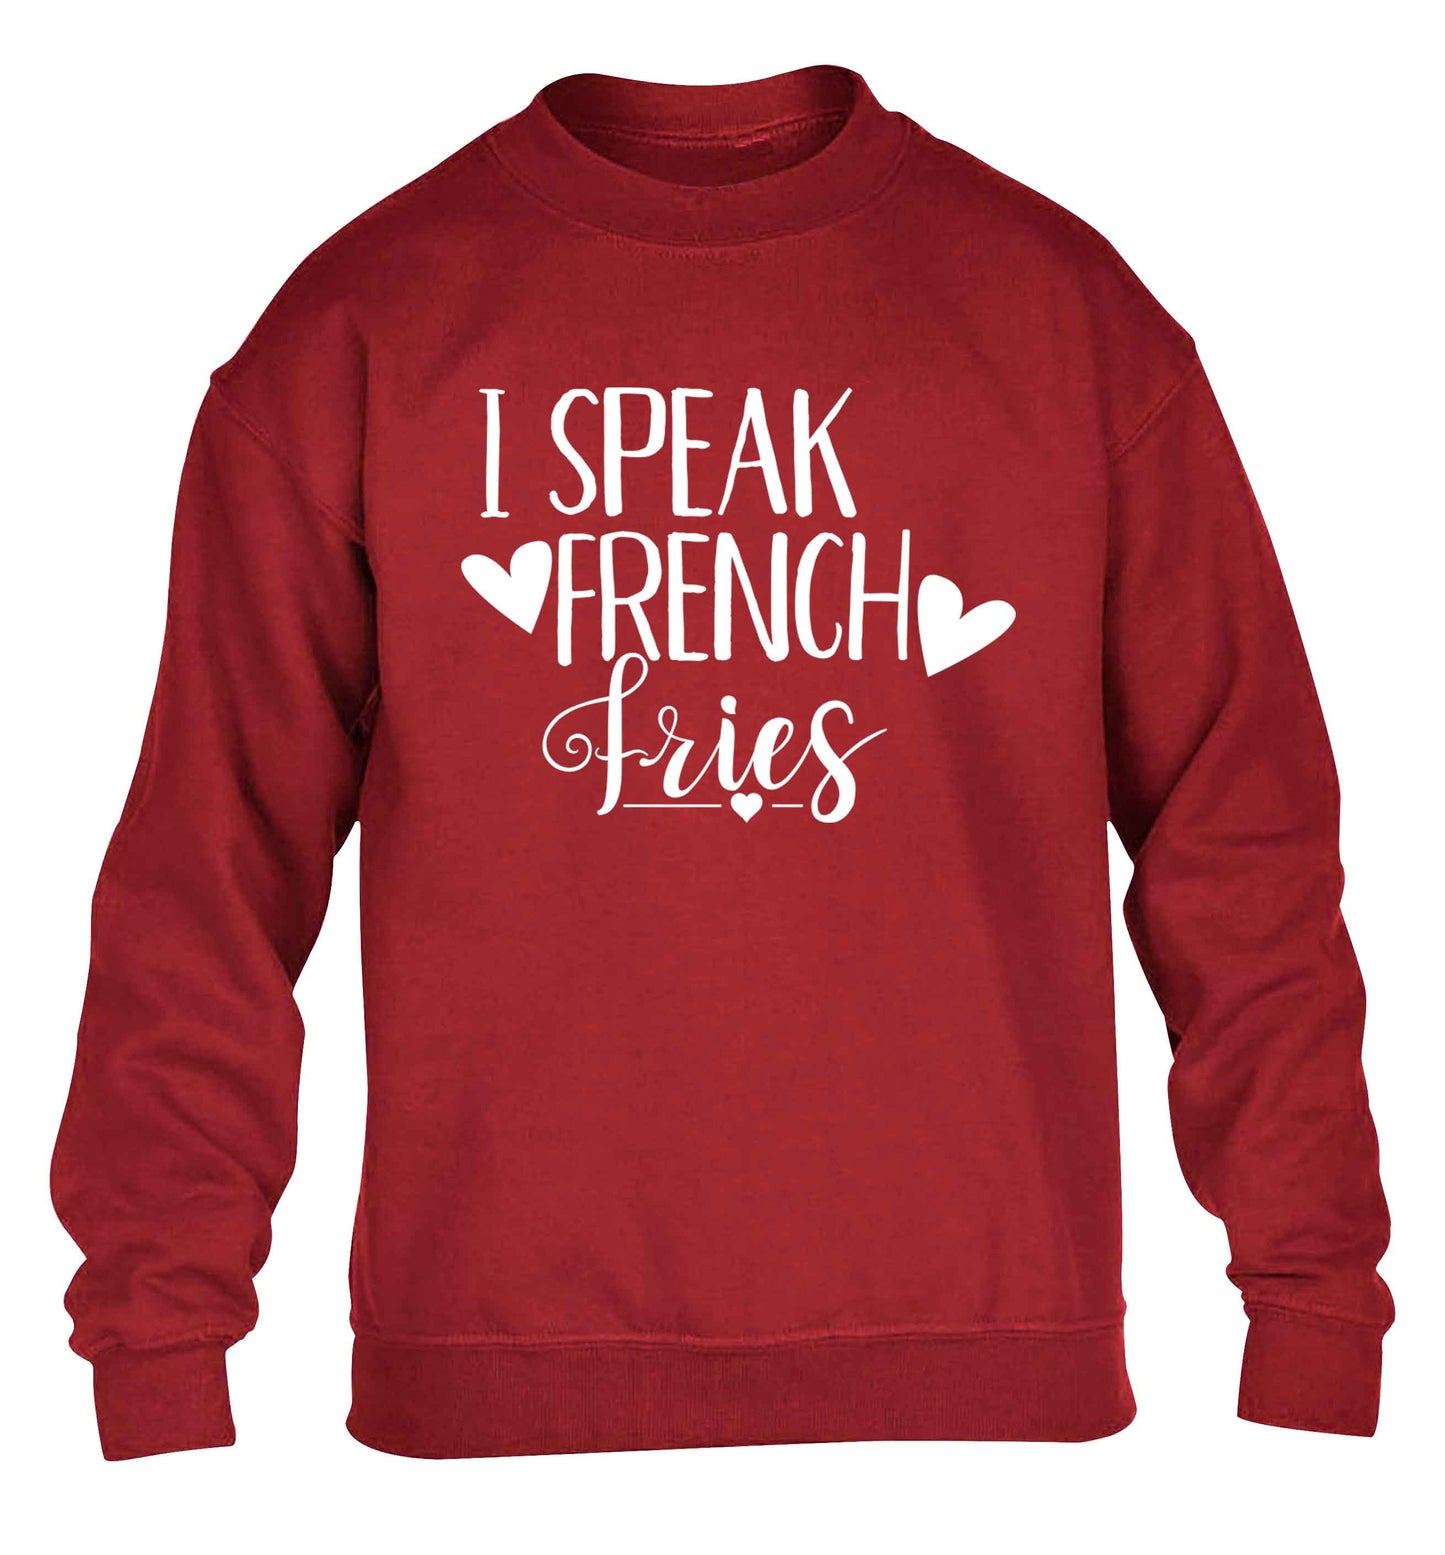 I speak French fries children's grey sweater 12-13 Years